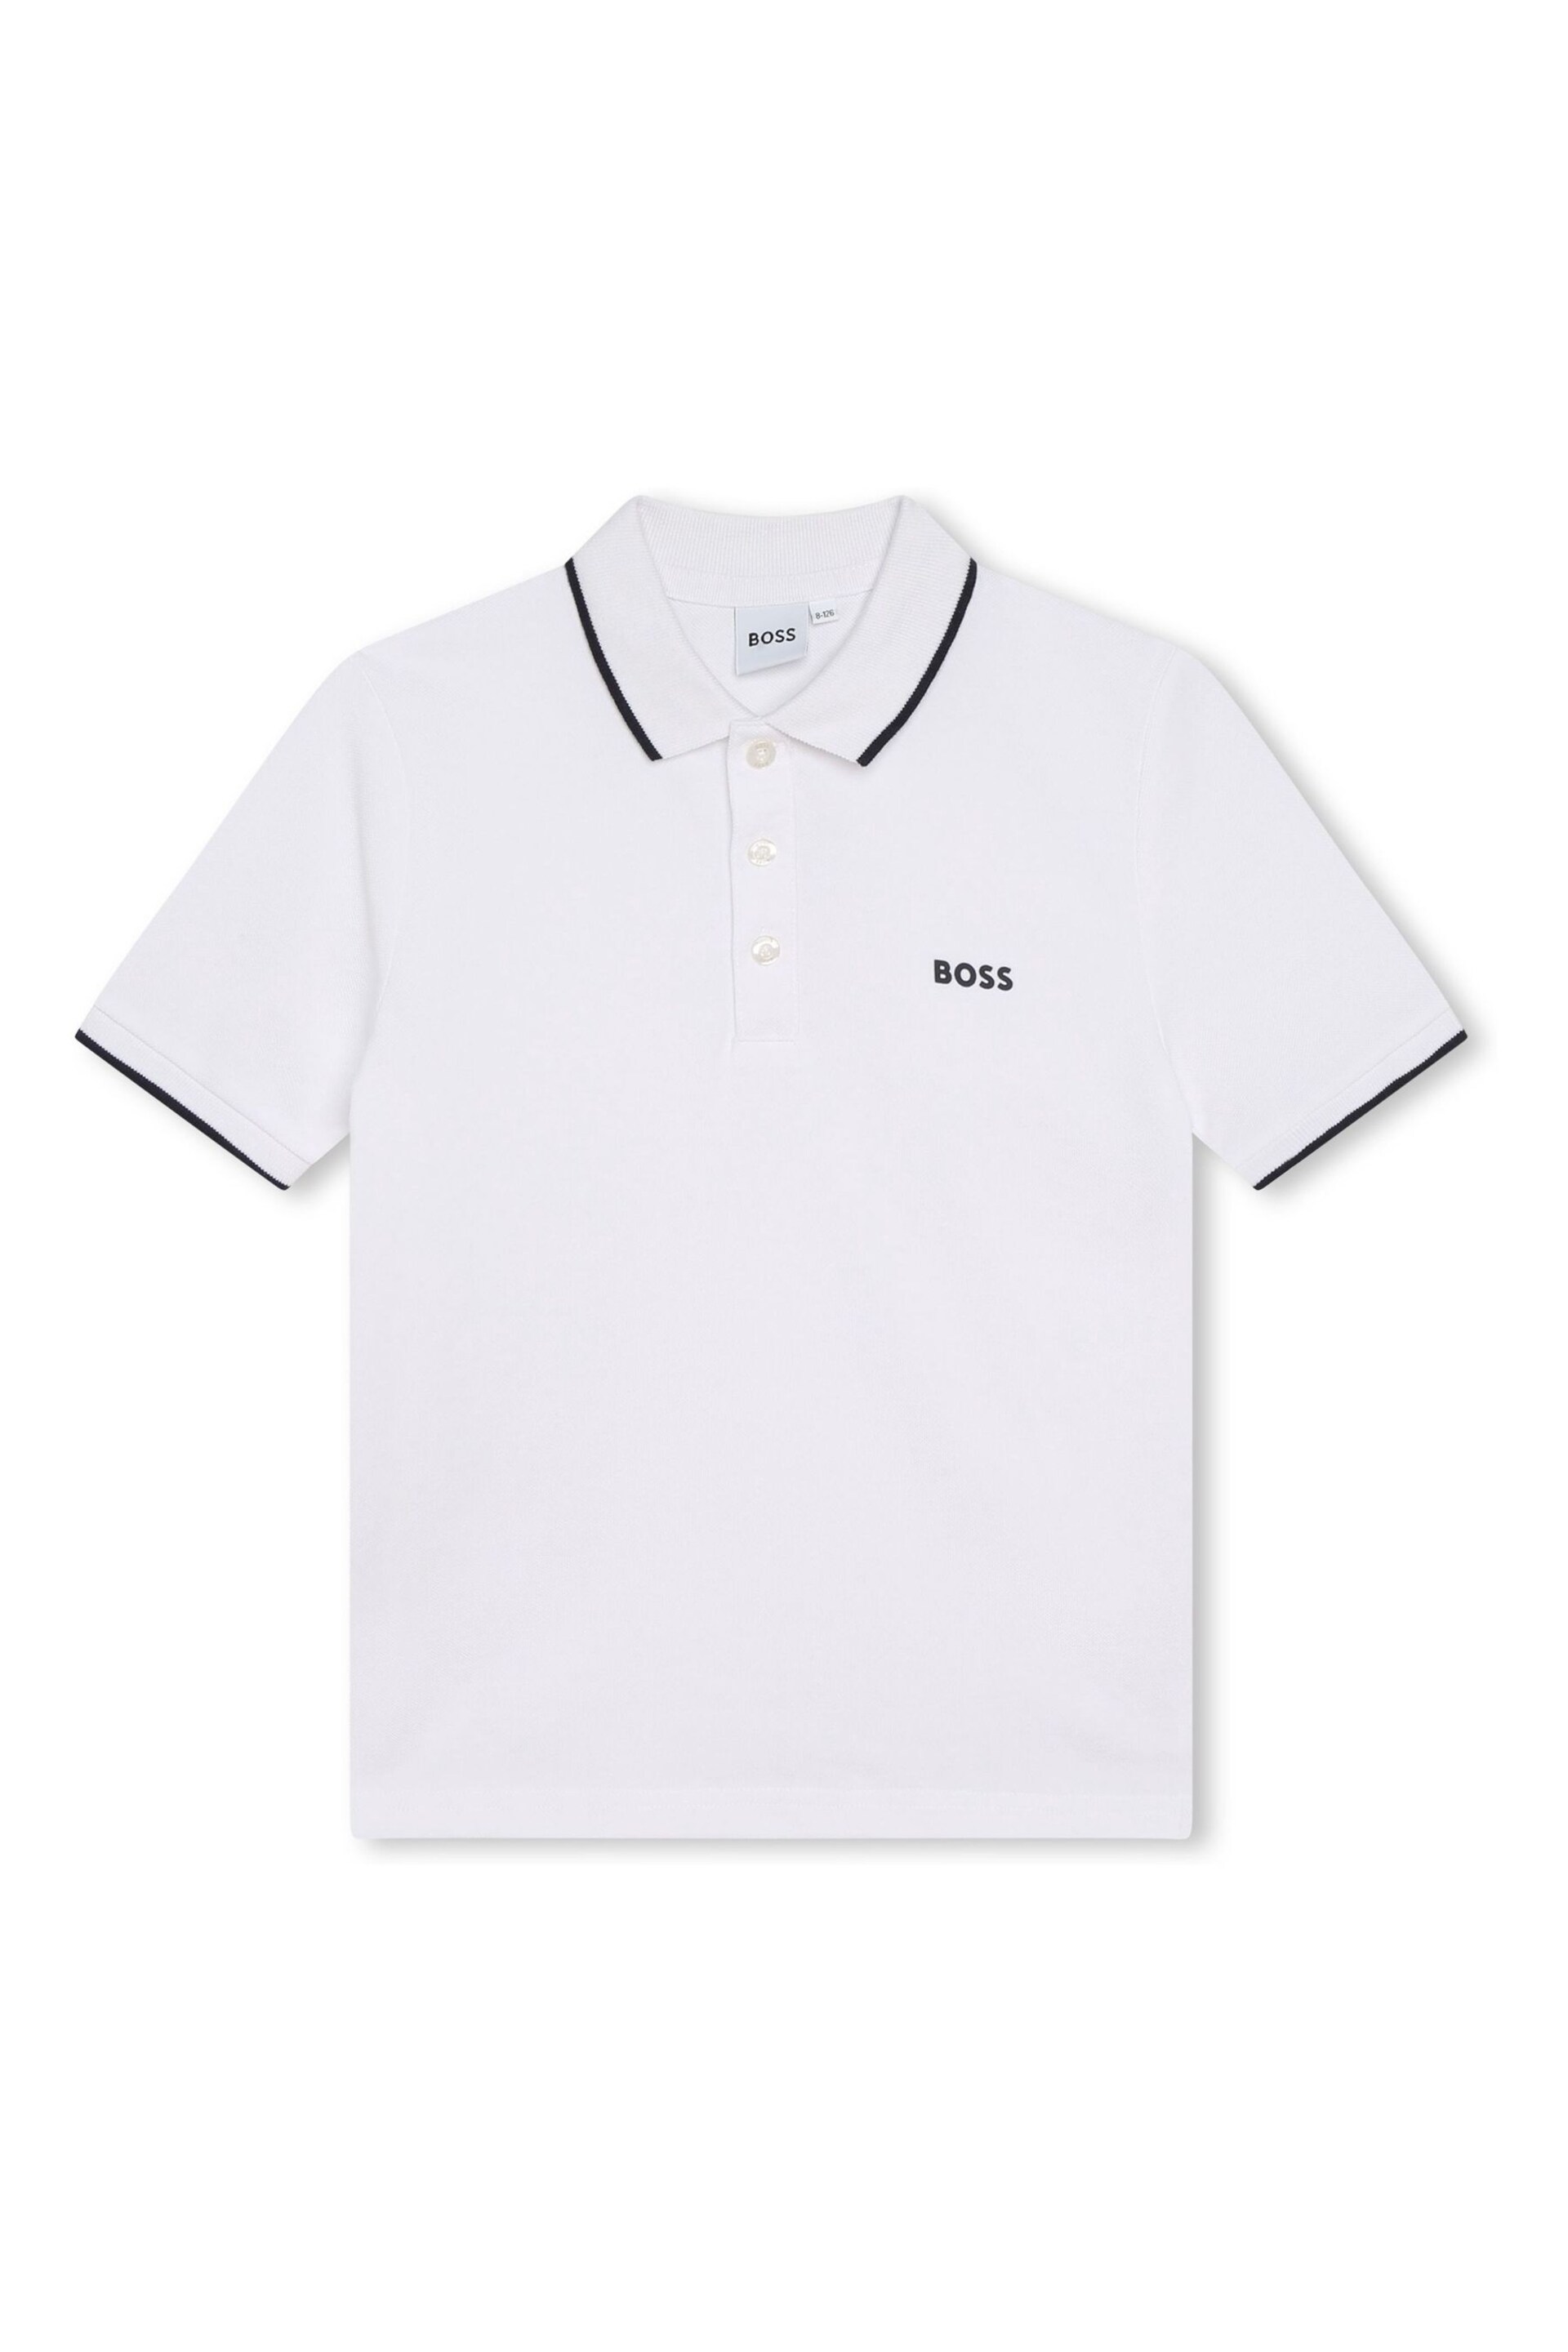 BOSS White Short Sleeved Logo Polo Shirt - Image 4 of 6